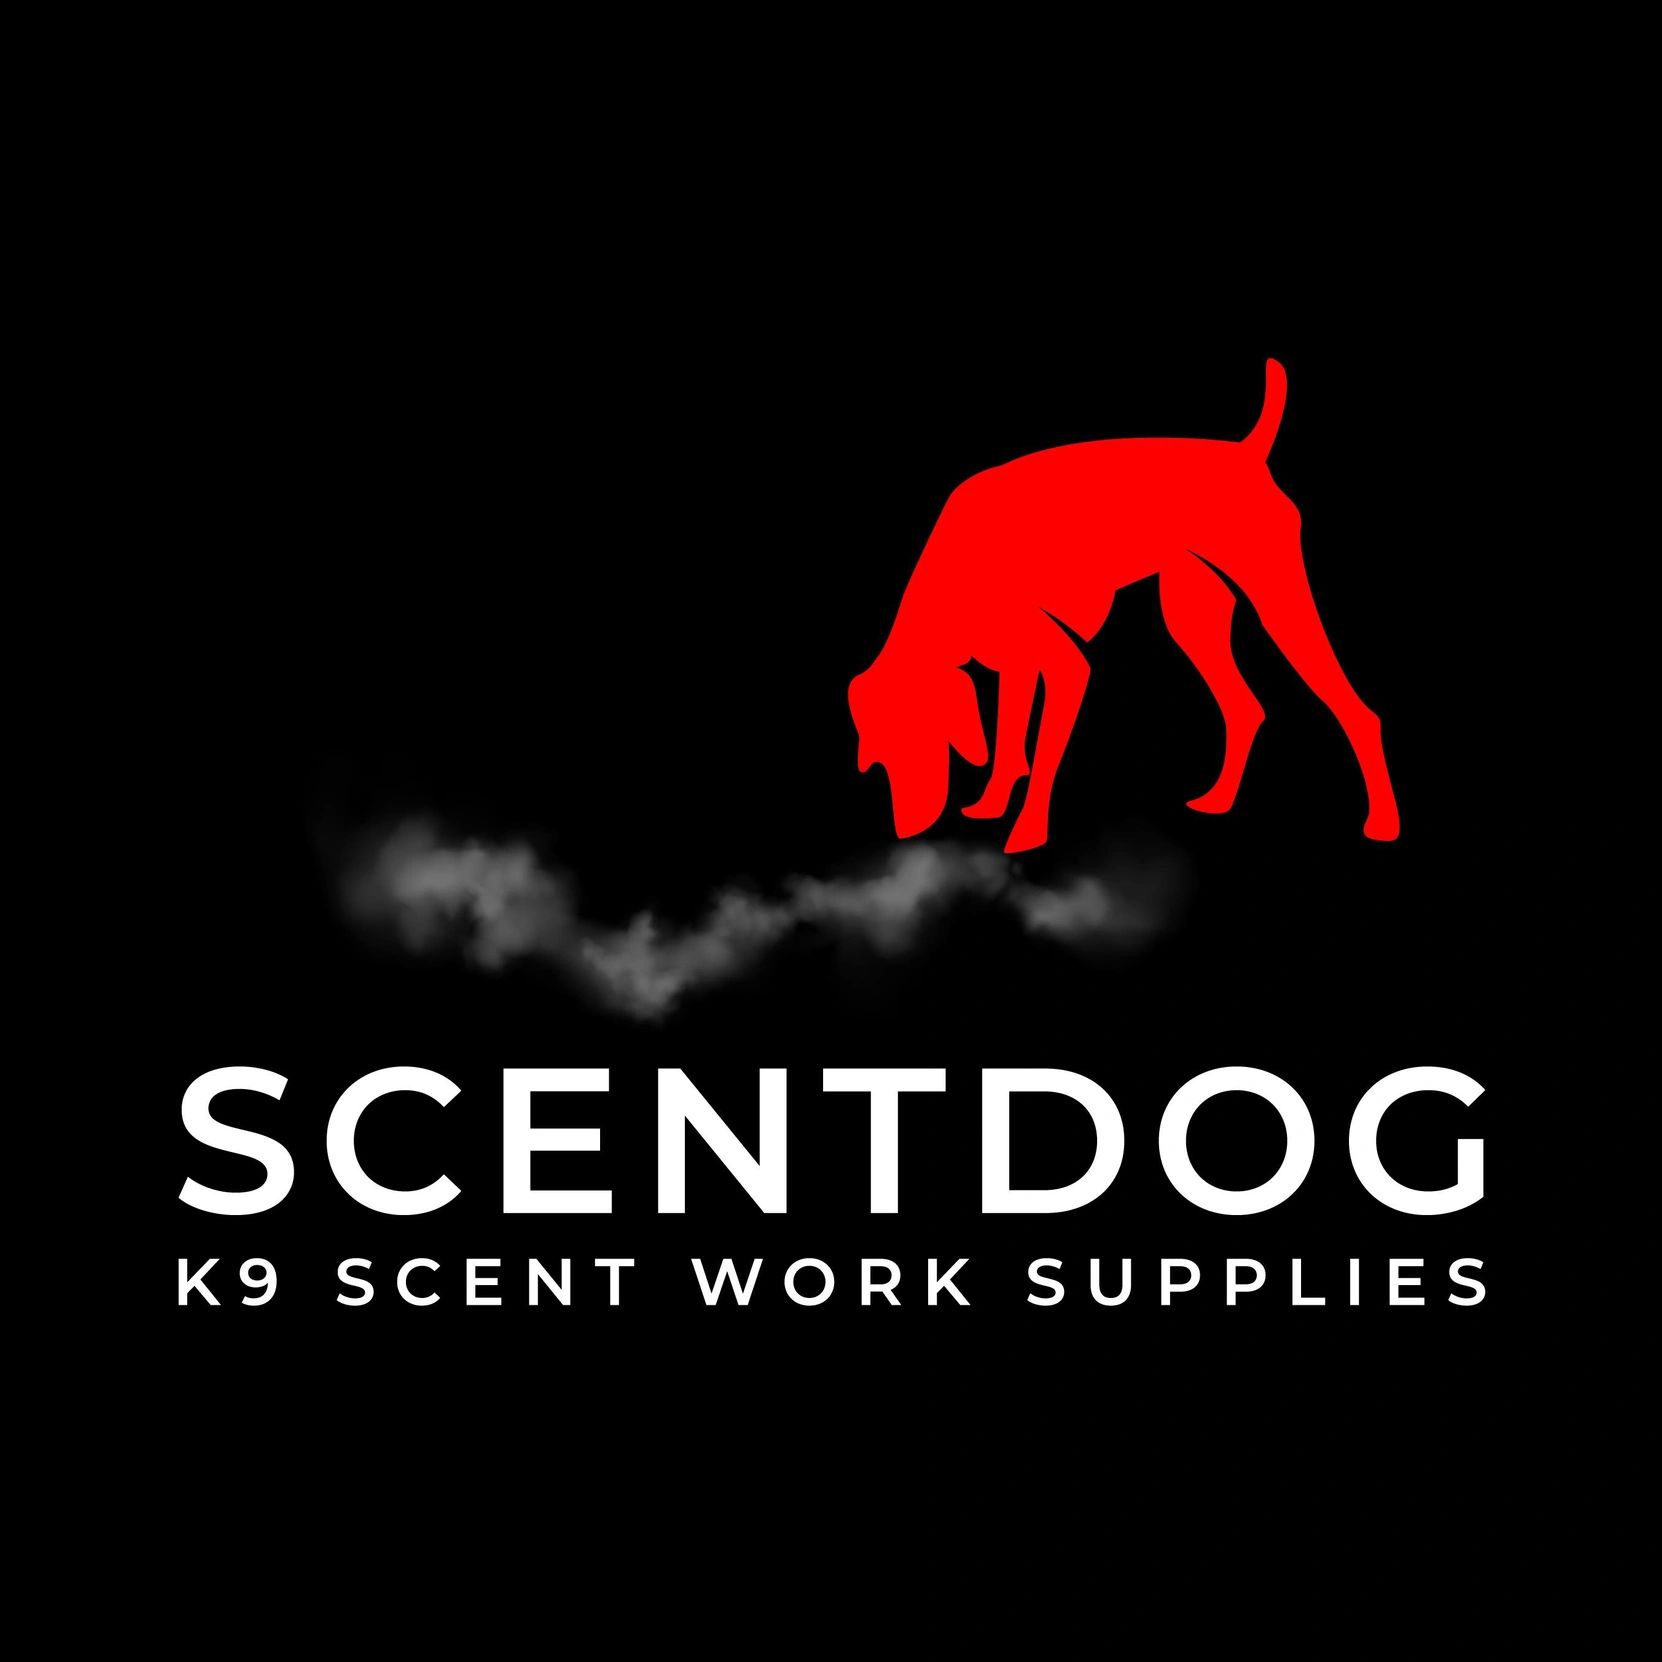 Scentdog logo Scentwork supplies